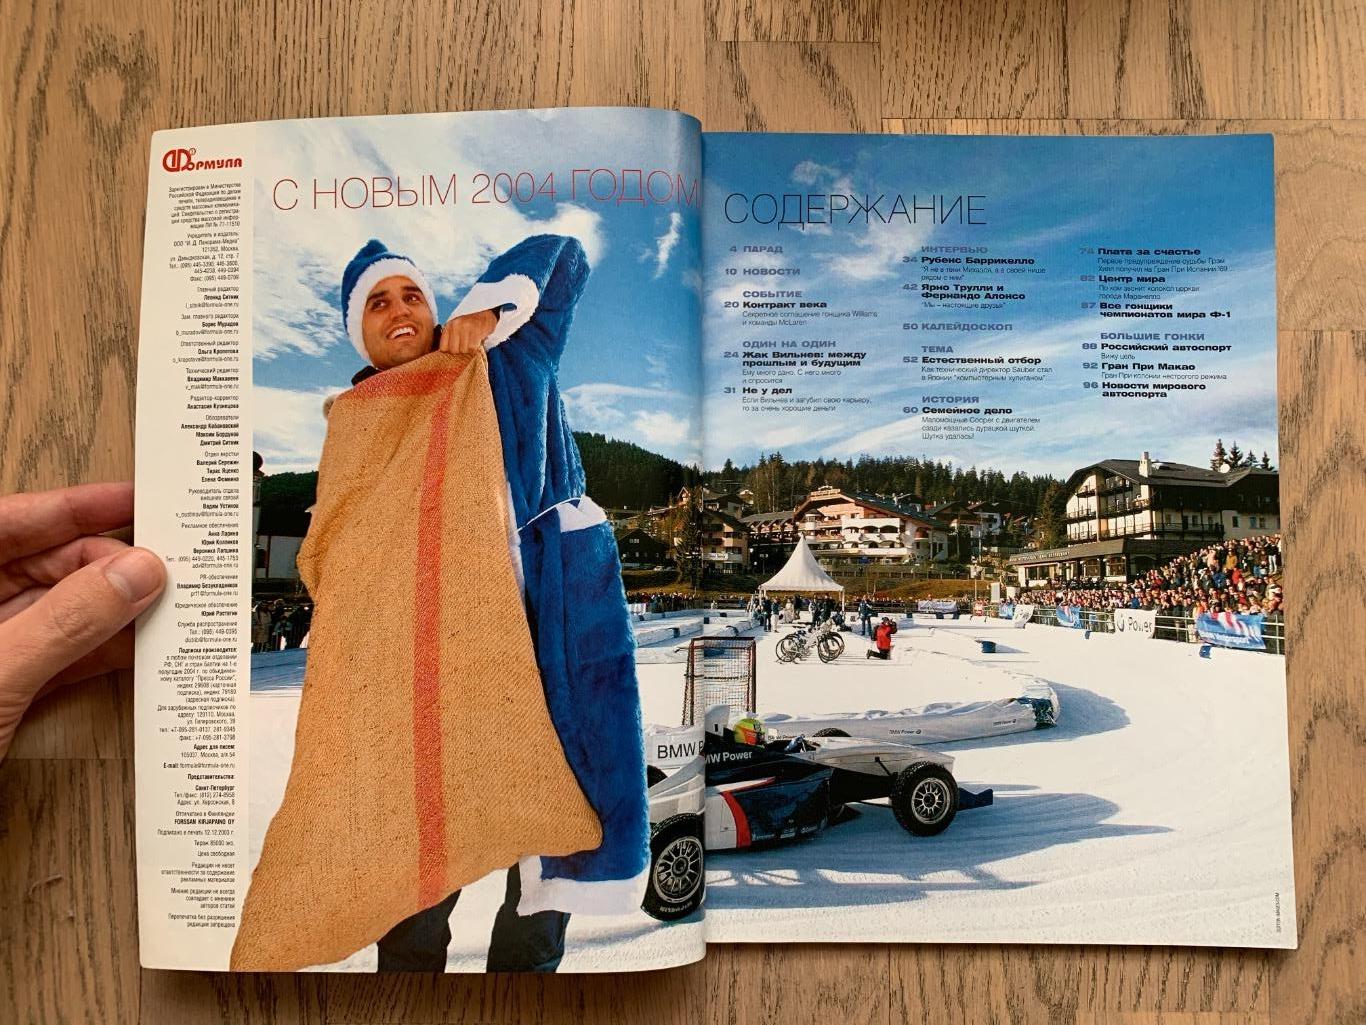 Журнал Формула 1 (Formula Magazine) / январь 2004 1